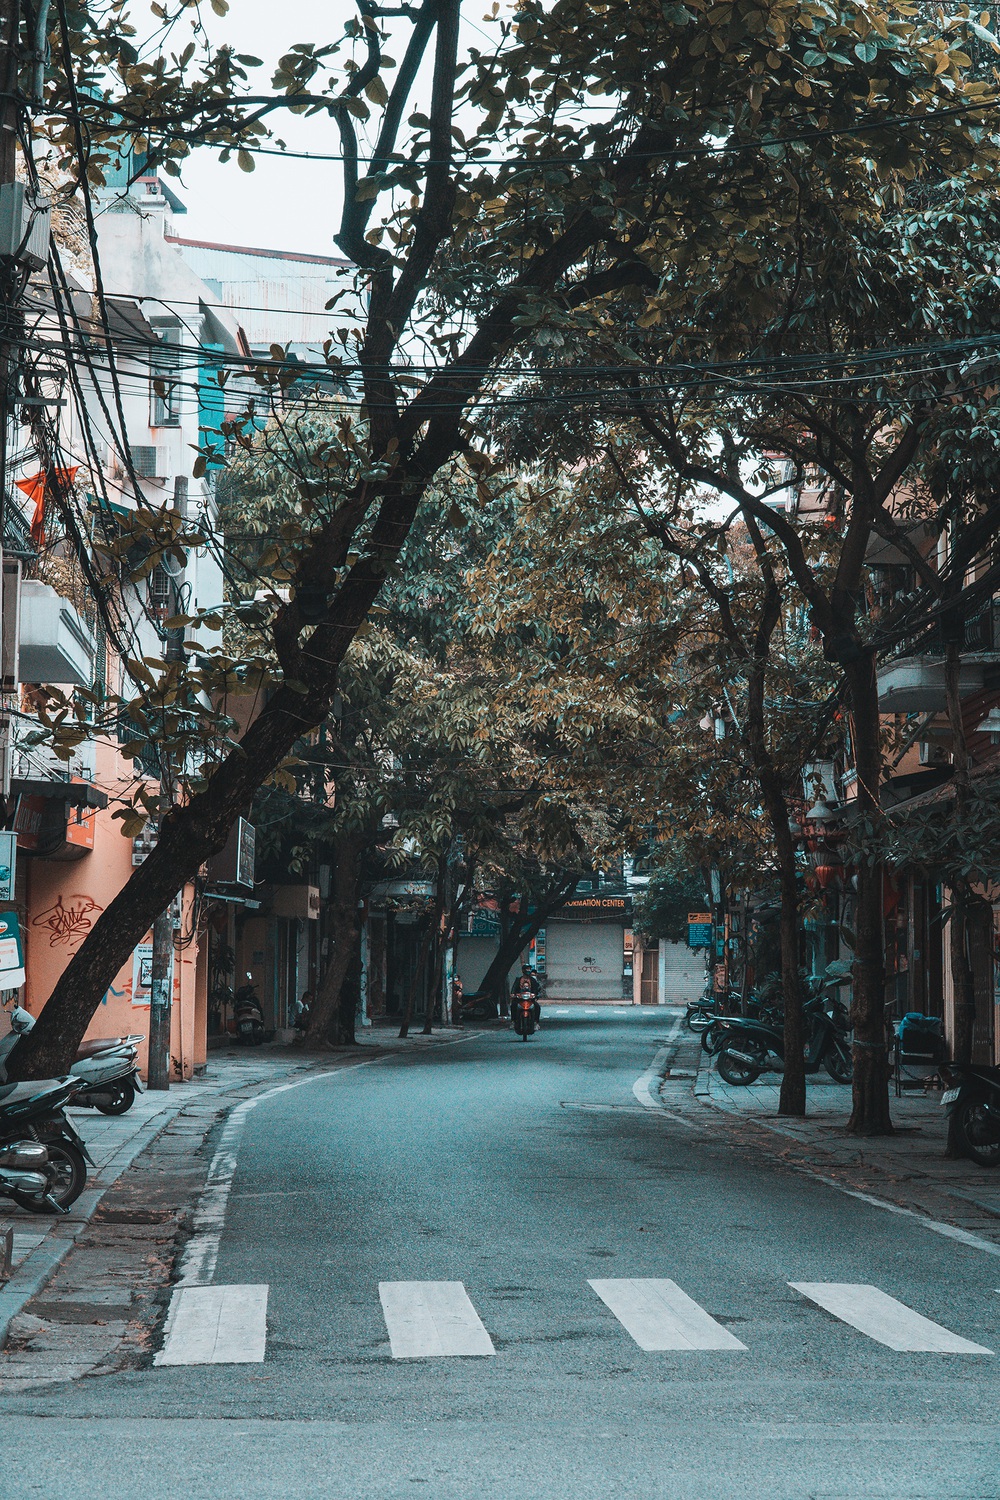 Với những hình ảnh về Hà Nội, bạn sẽ được trải nghiệm những cung bậc cảm xúc khác nhau về thành phố này, từ sự náo nhiệt đến yên bình, từ văn hóa đến ẩm thực.